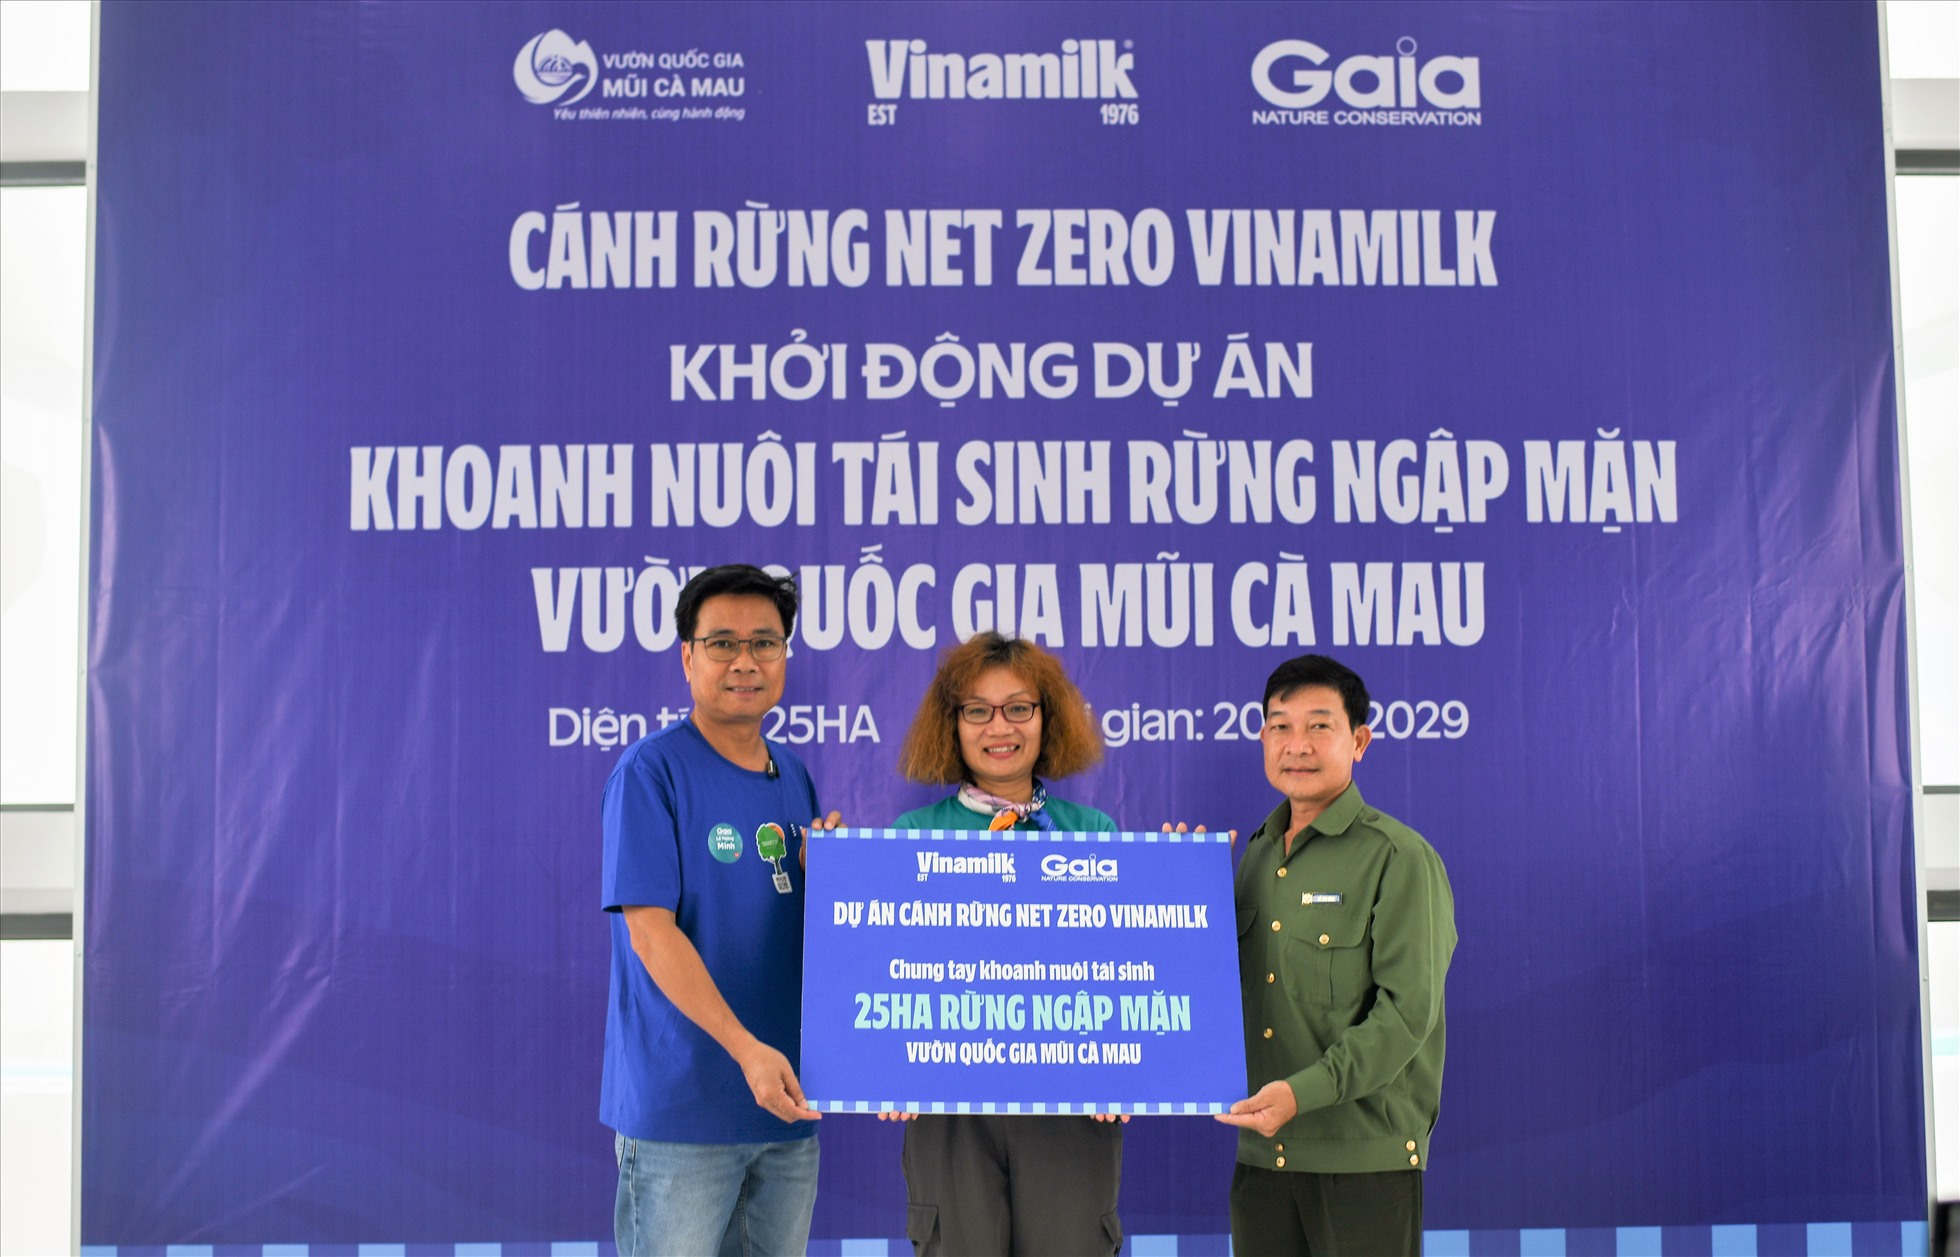 Ông Lê Hoàng Minh (bên trái) đại diện Vinamilk và bà Đỗ Thị Thanh Huyền đại diện Gaia trao tượng trưng bảng 25ha rừng ngập mặn thuộc dự án “Cánh rừng Net Zero Vinamilk” cho đại diện Vườn Quốc gia Mũi Cà Mau. Ảnh: Vinamilk